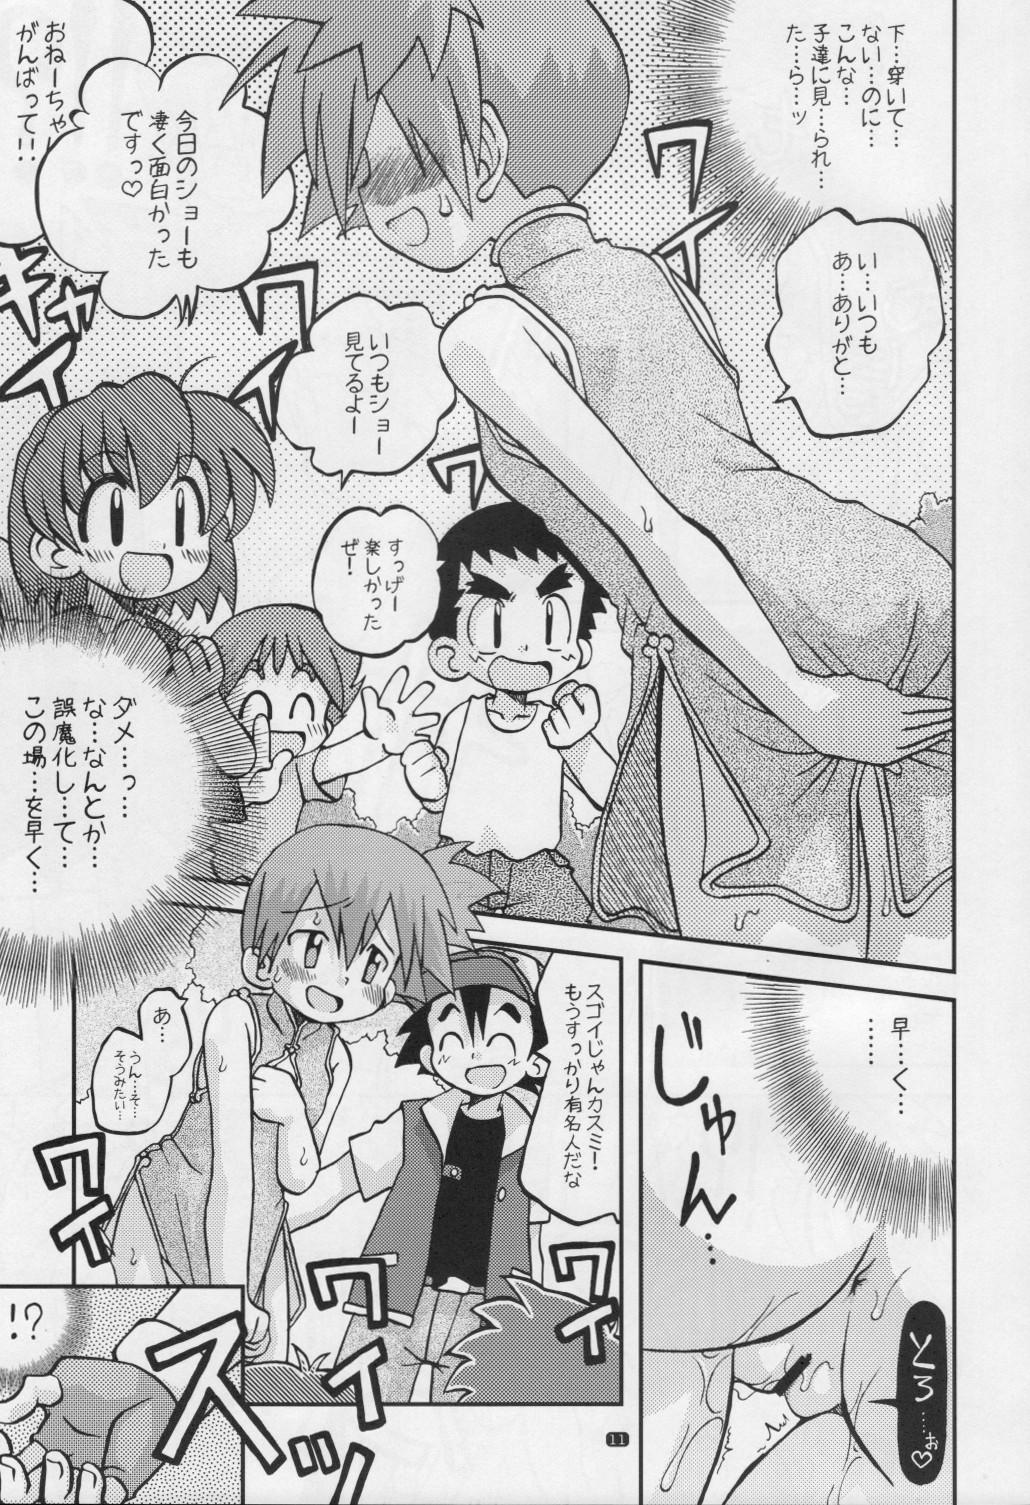 Piss Yume no Tsubomi wa Tsubomi no Mama dakedo - Pokemon Soft - Page 10